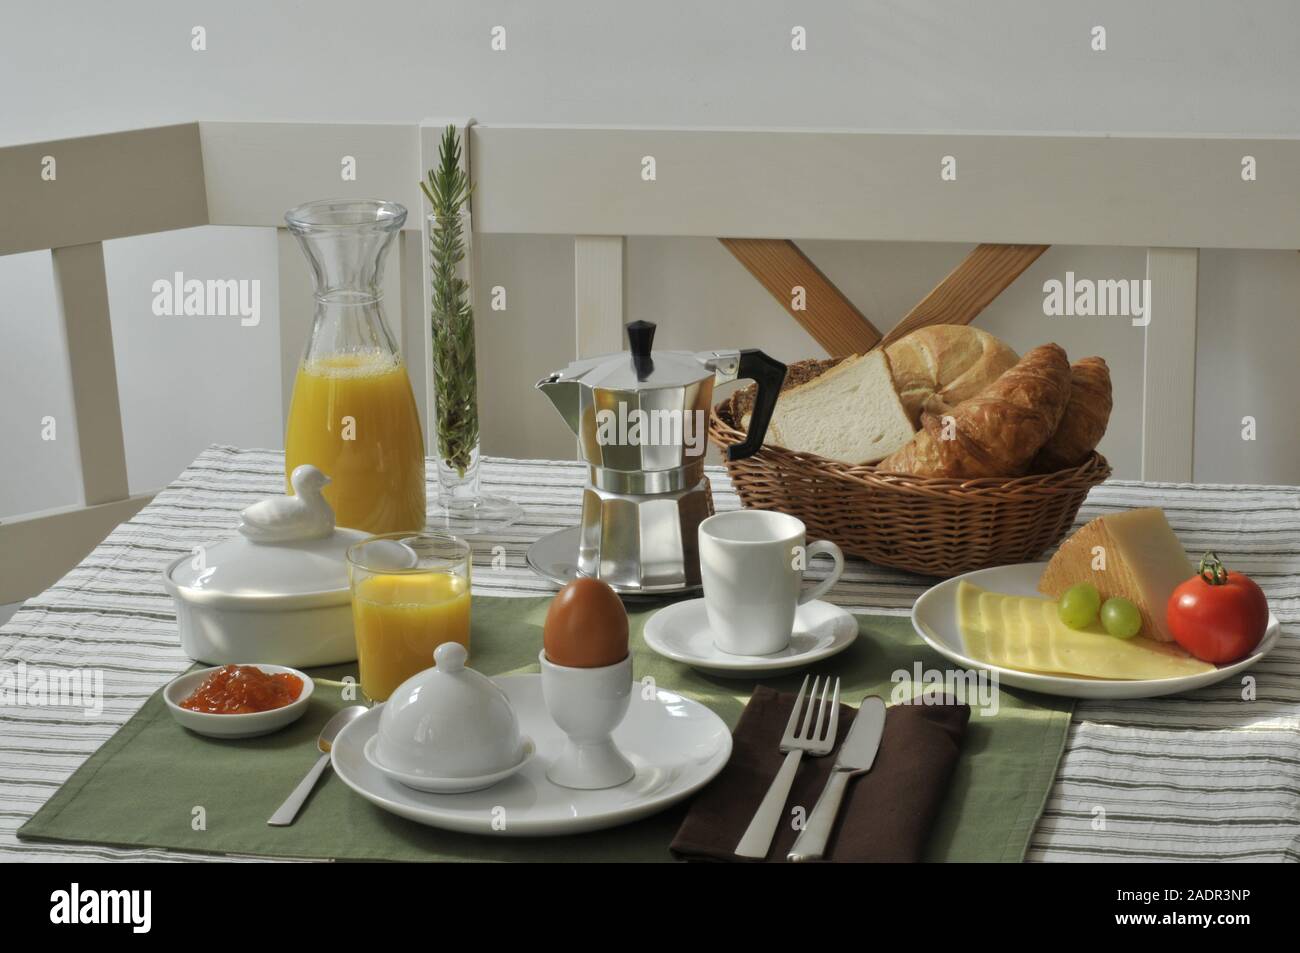 Singlefrühstück - le petit-déjeuner seul Banque D'Images